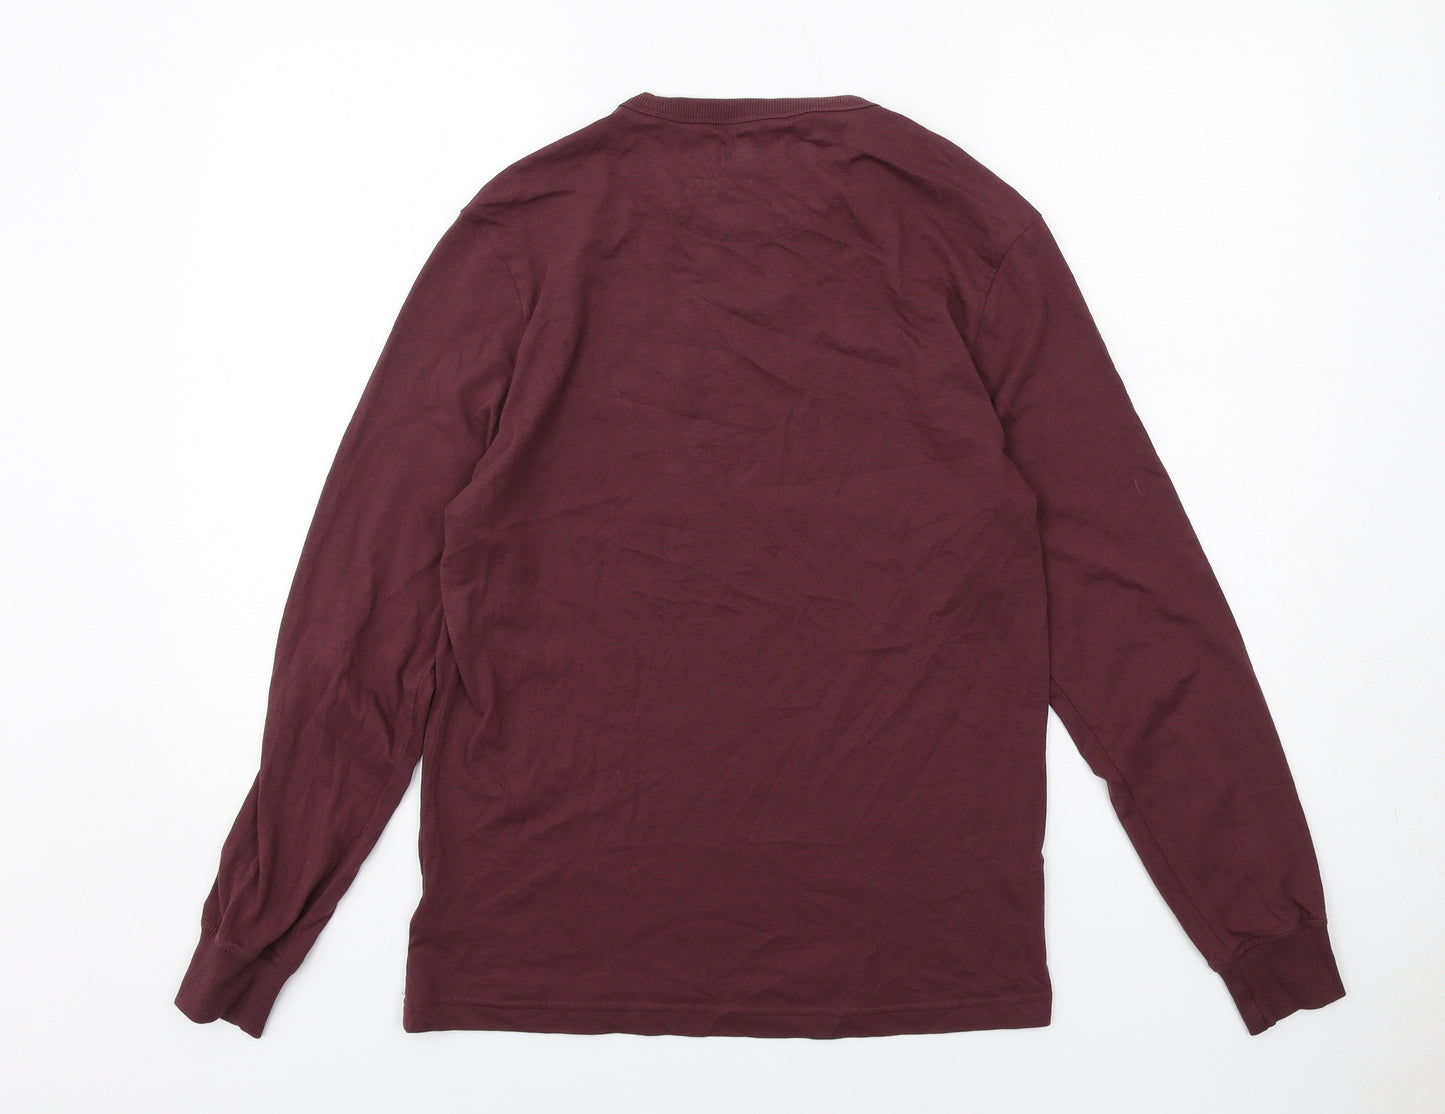 Farah Mens Purple Cotton T-Shirt Size M Round Neck